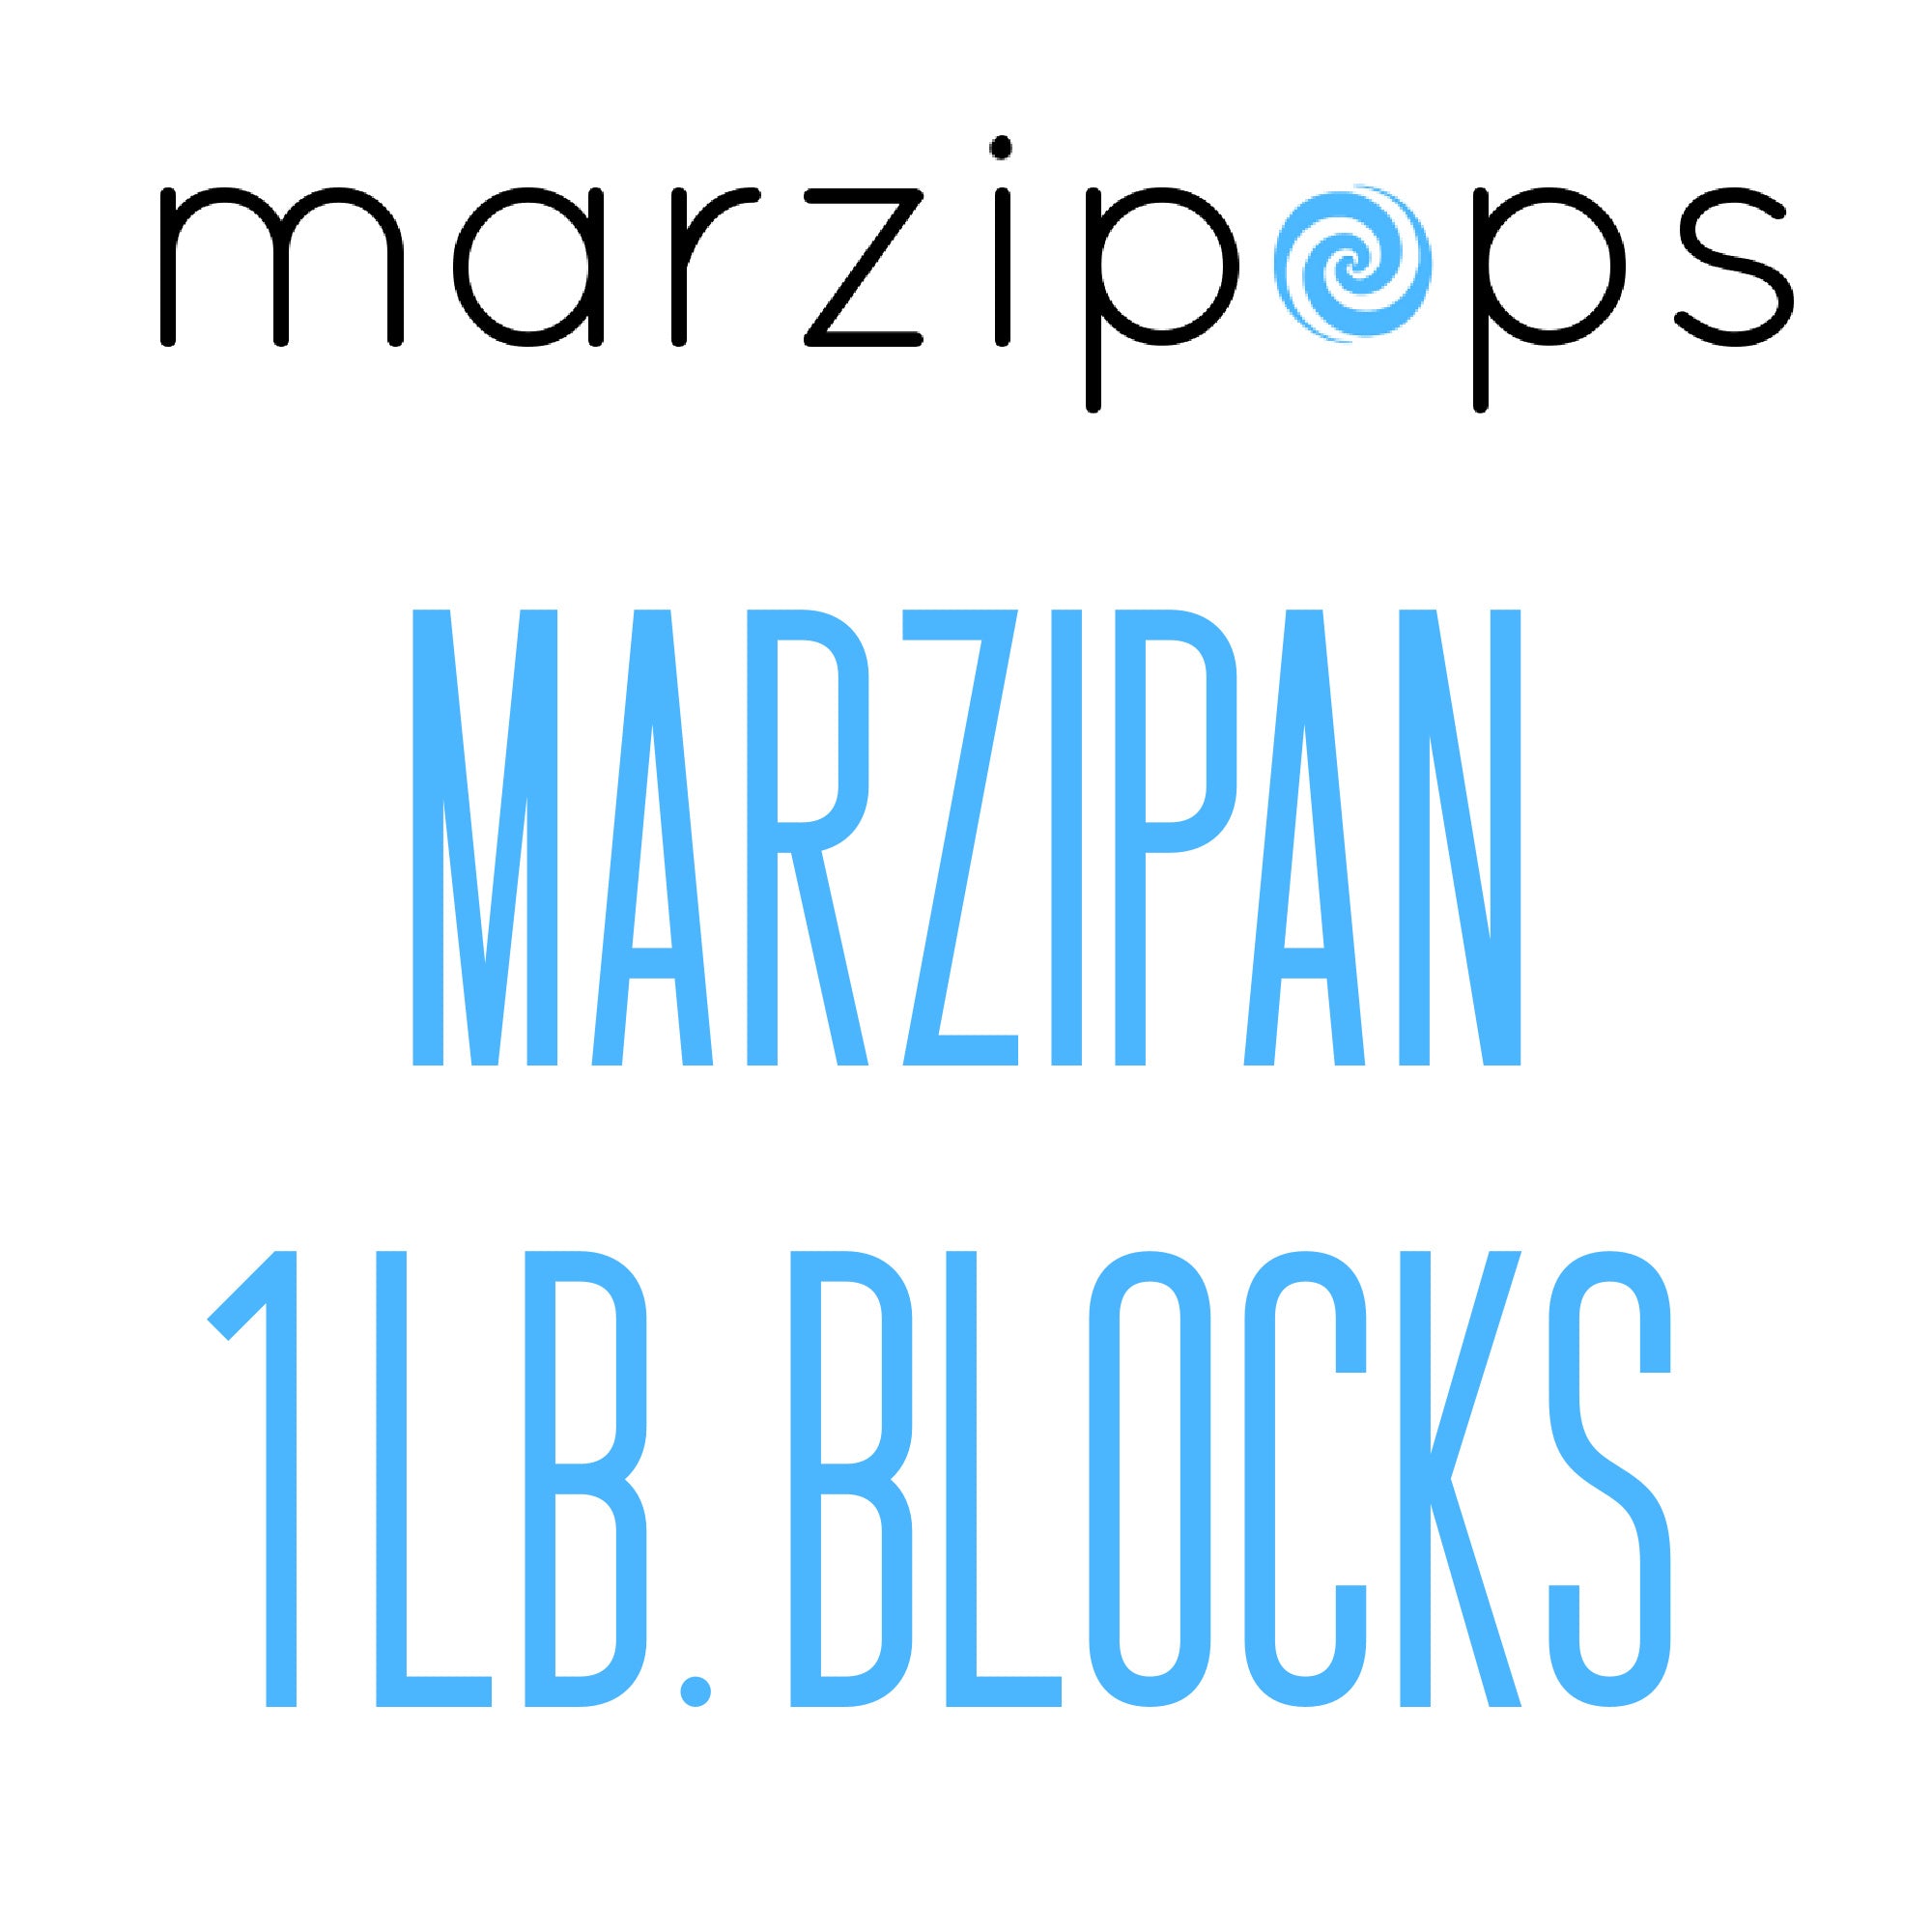 Marzipan Block